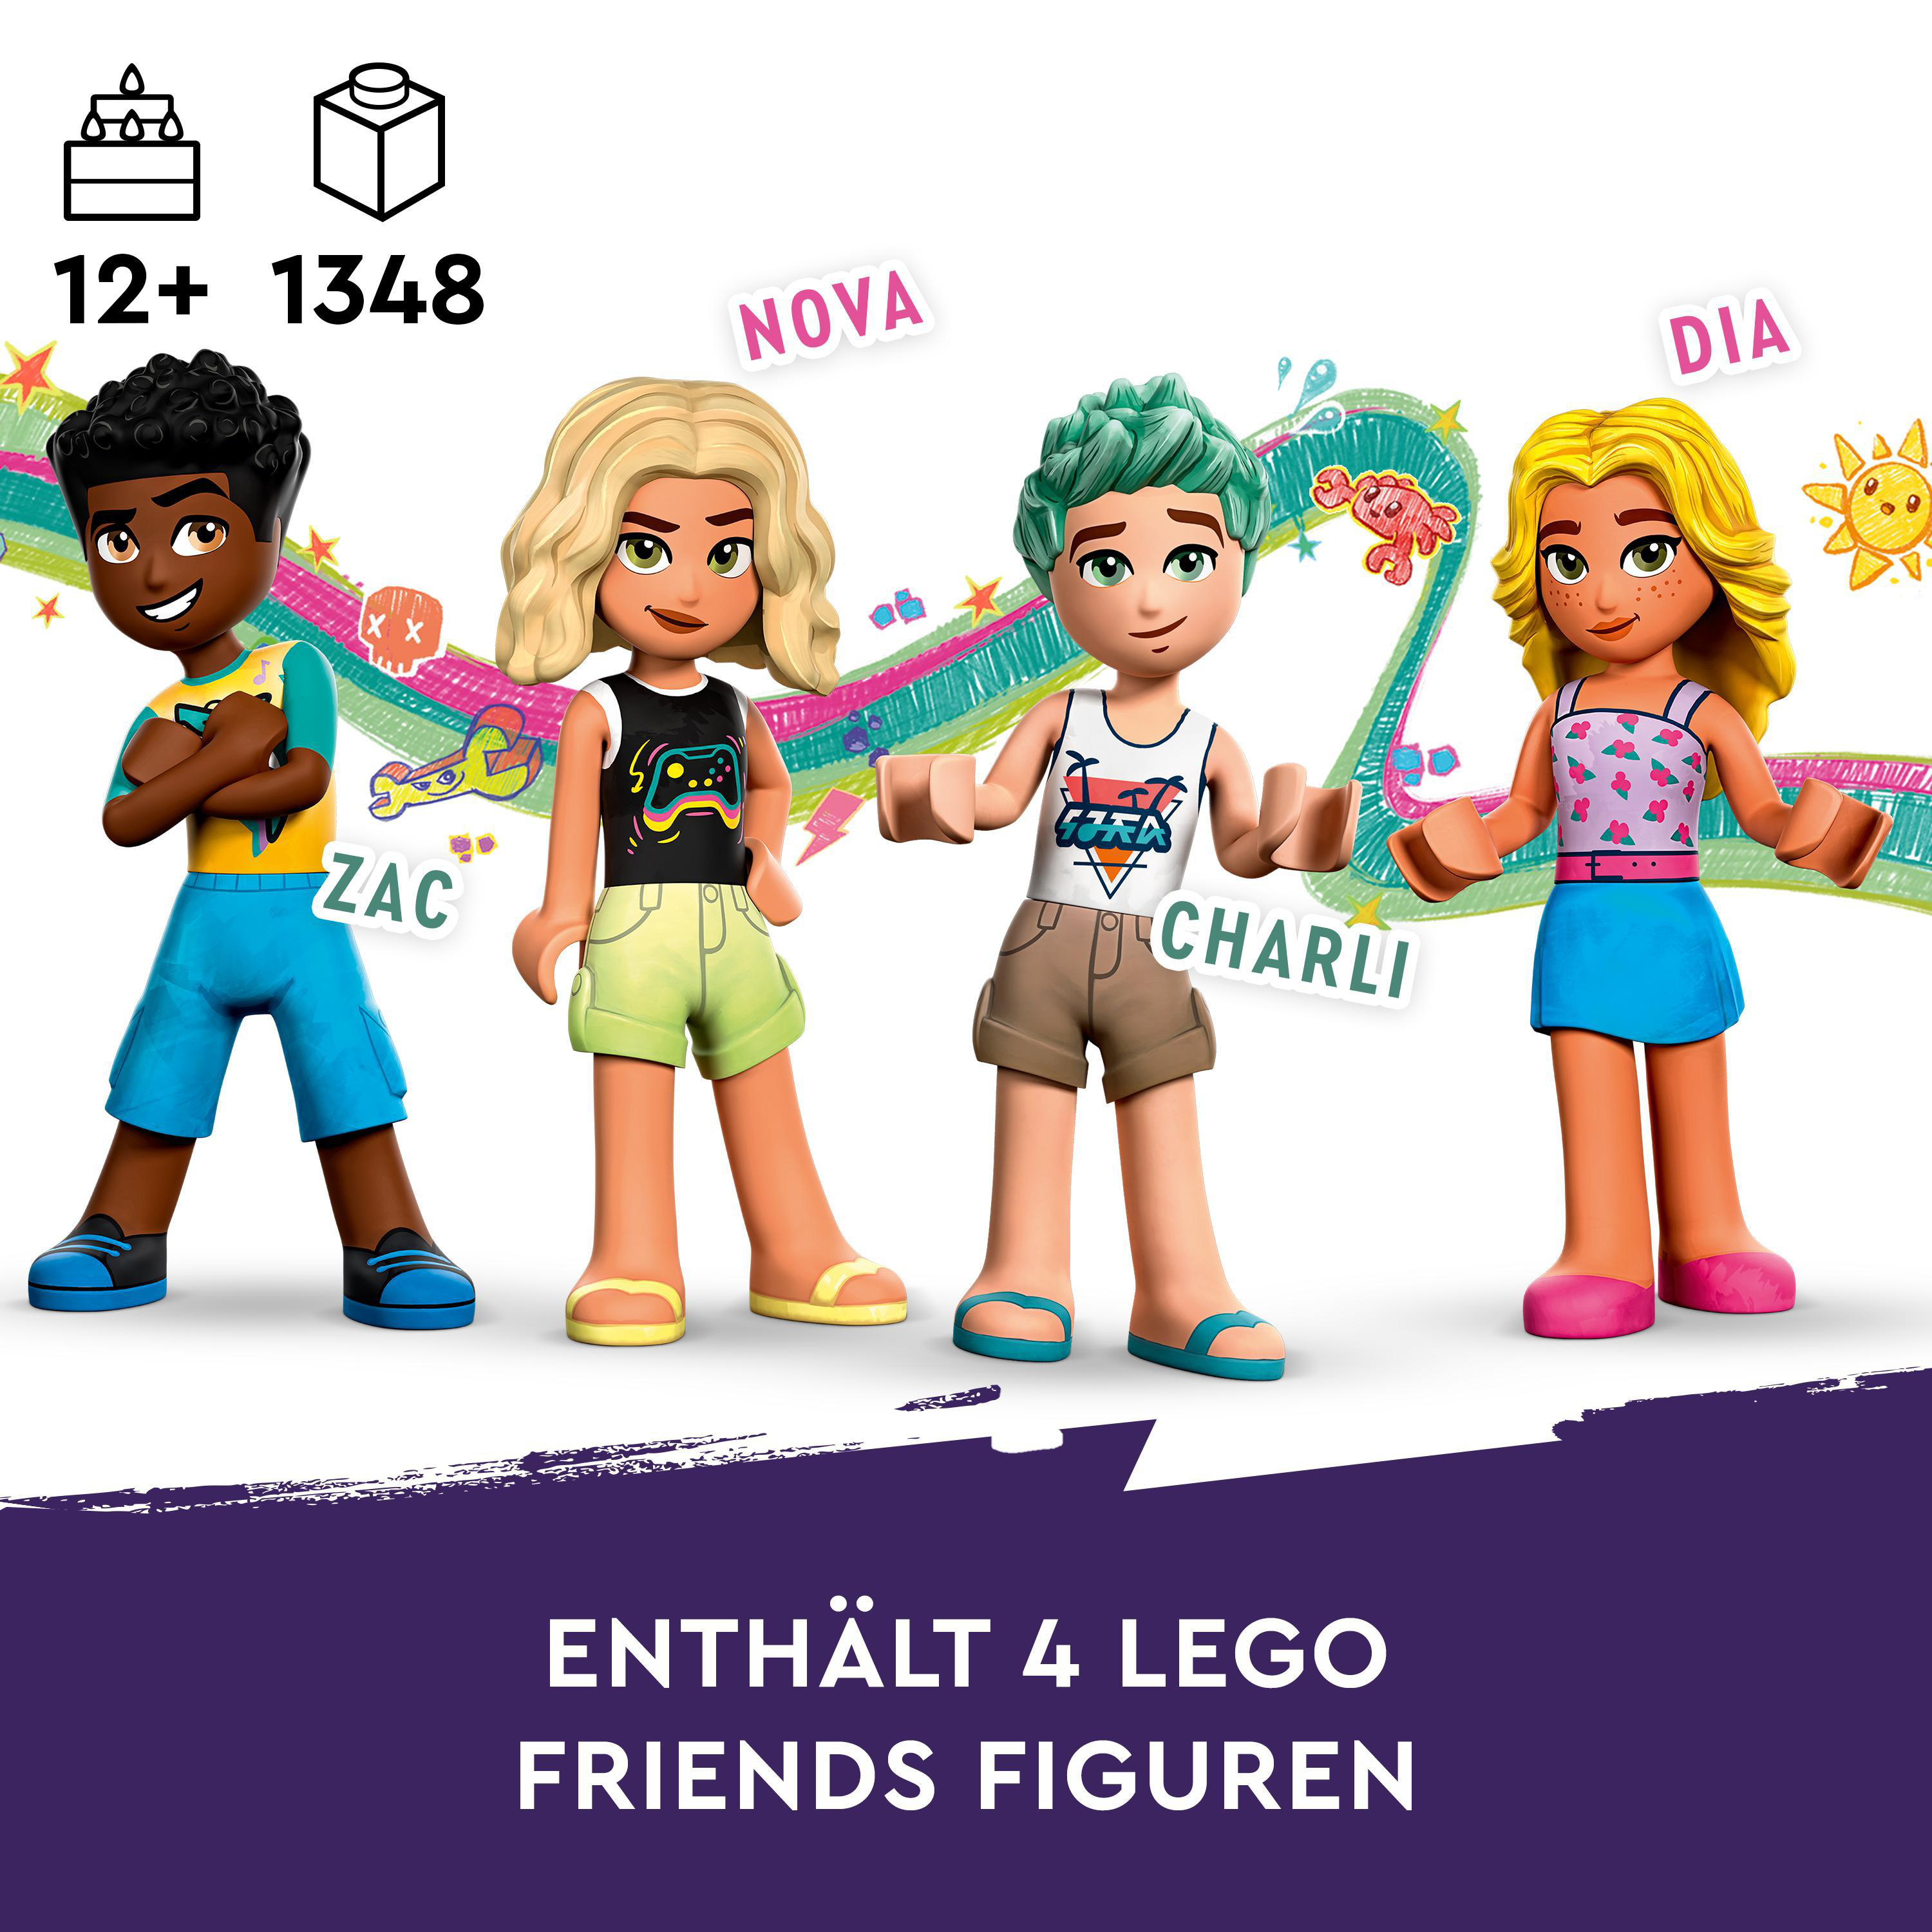 Friends Mehrfarbig Strand-Erlebnispark LEGO 41737 Bausatz,